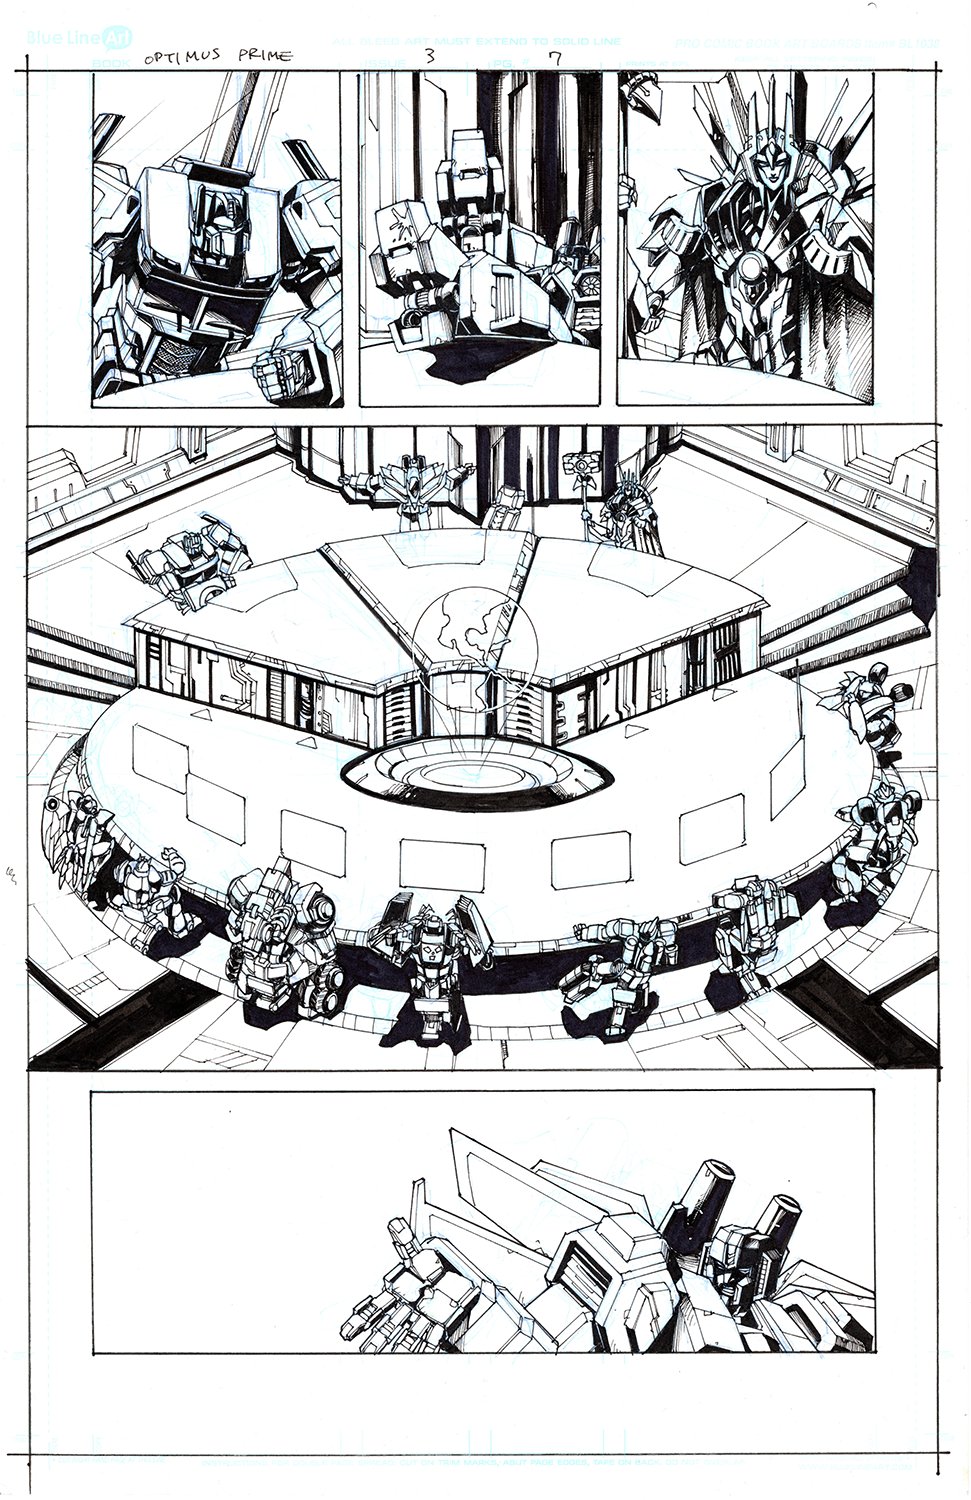 Optimus Prime #3 Page 07